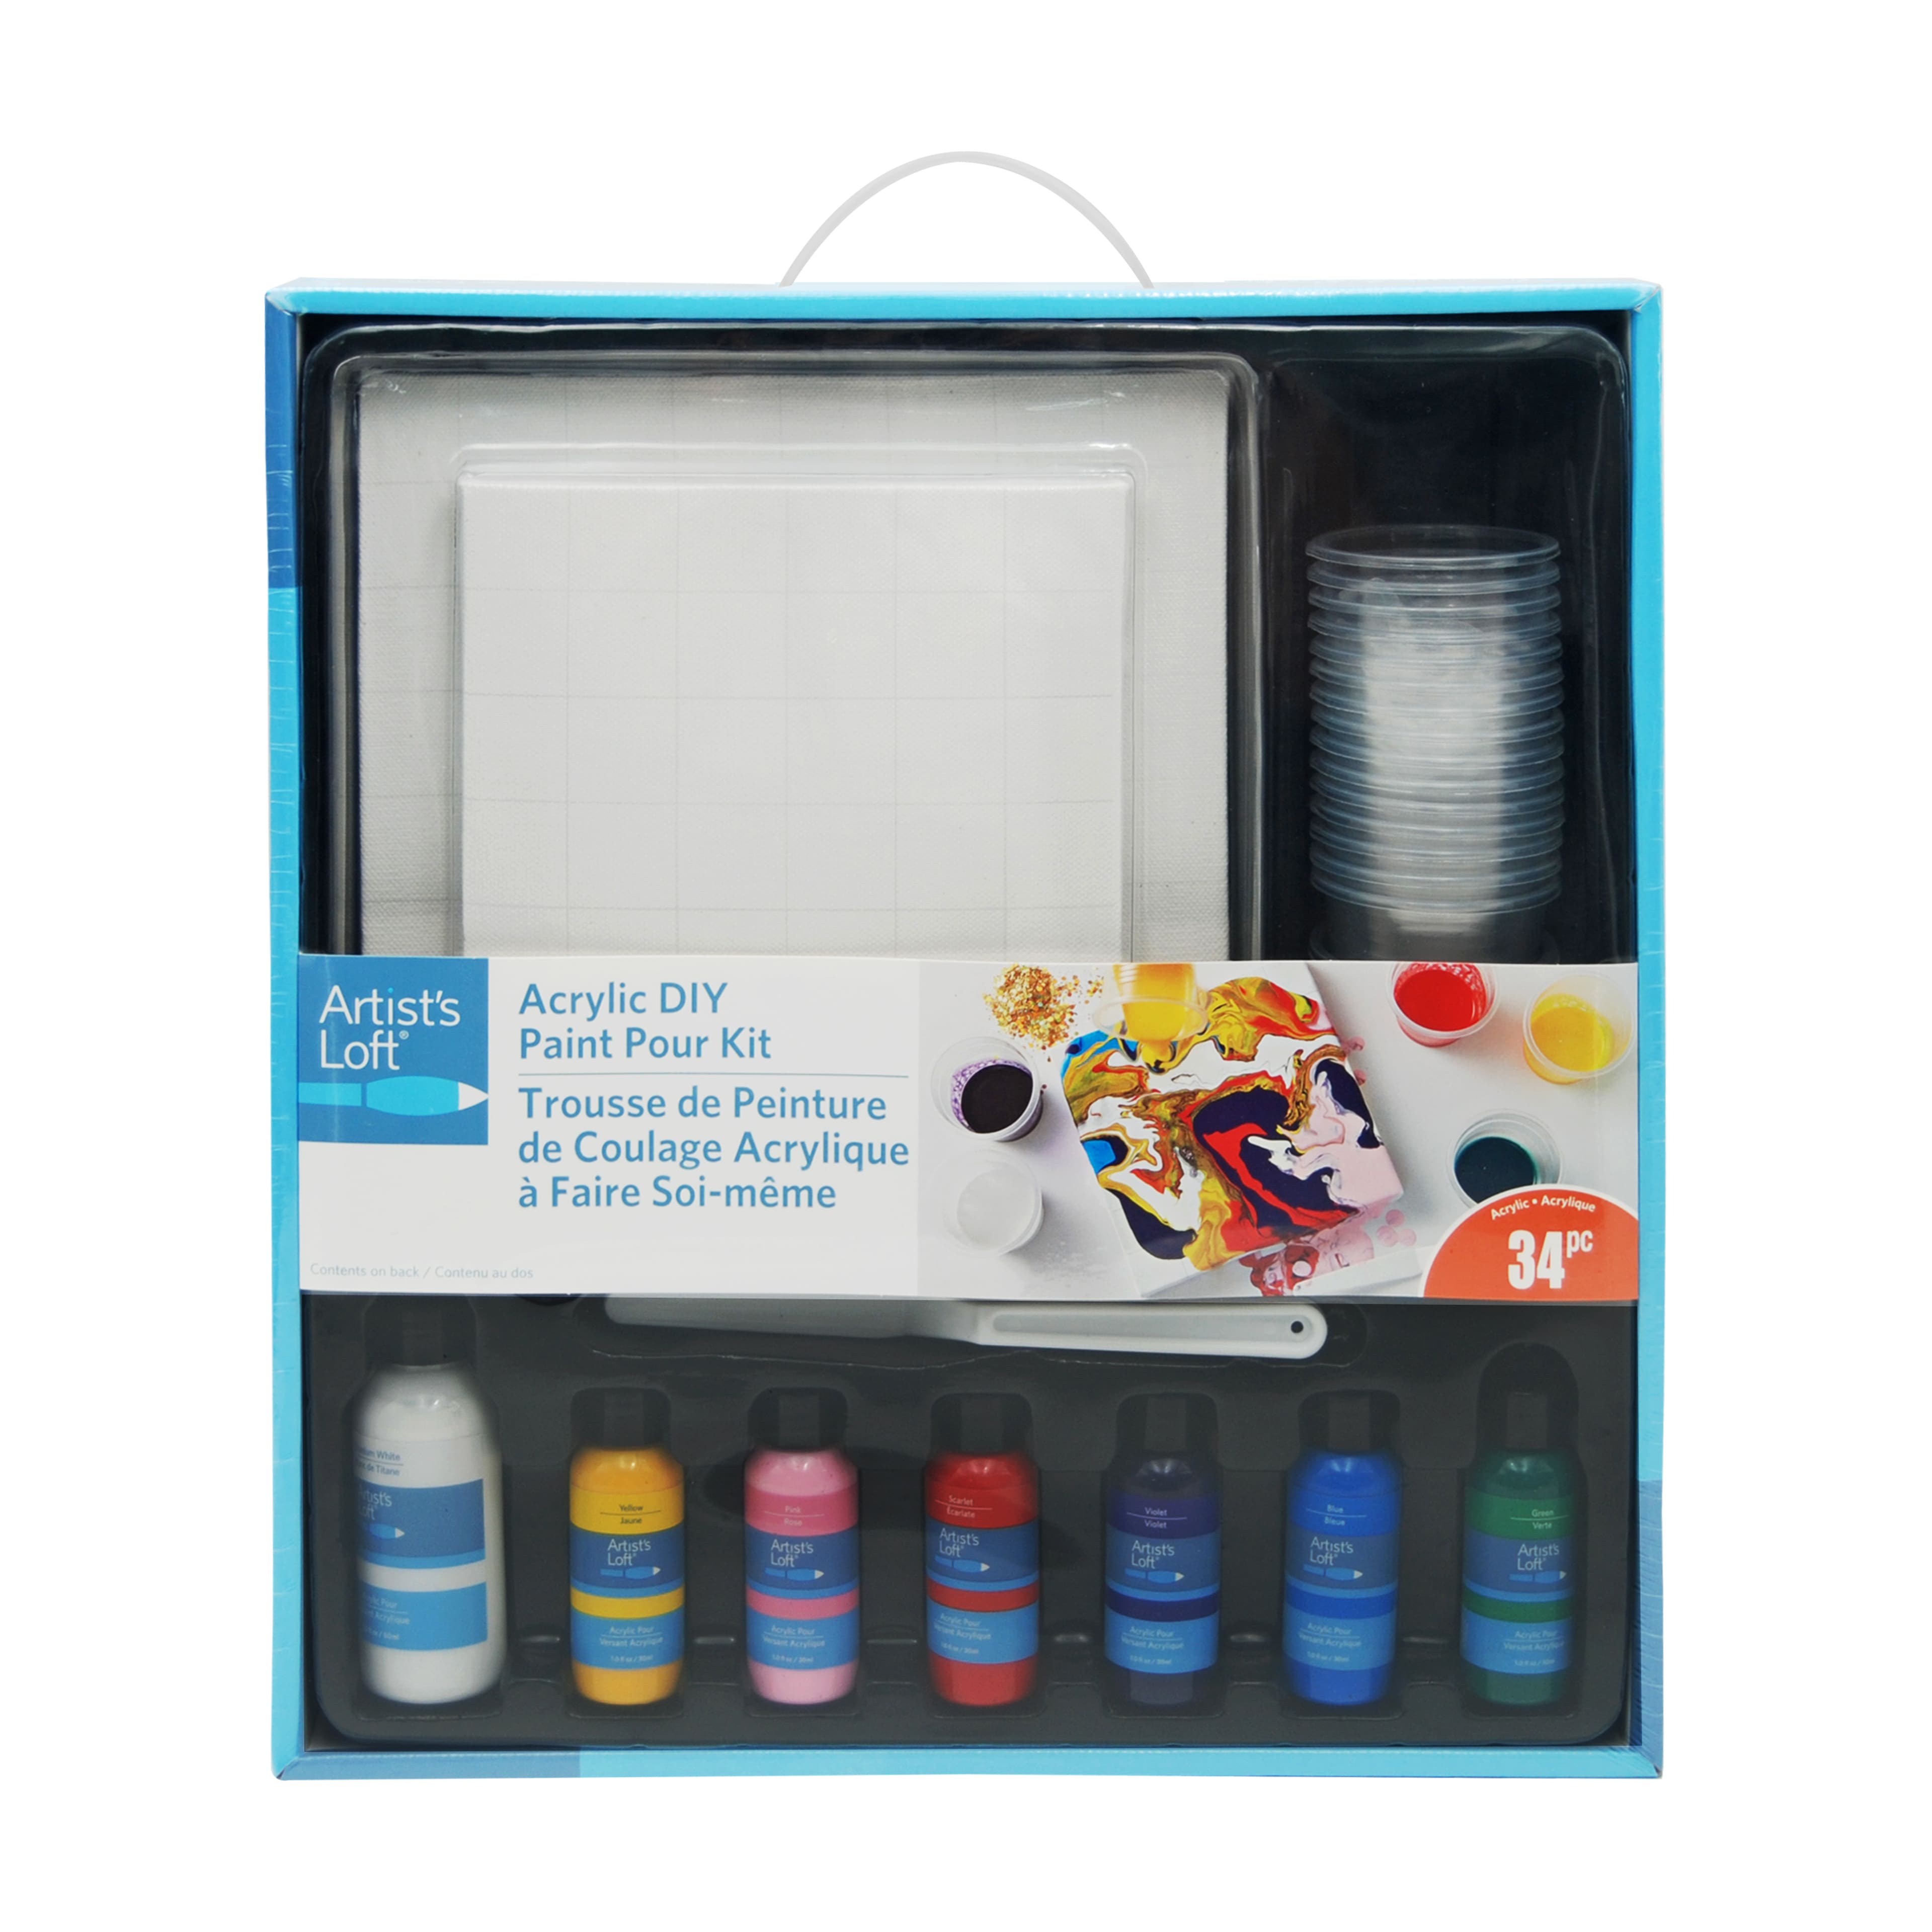 Colour Block Watercolor Paint Set - 32pc